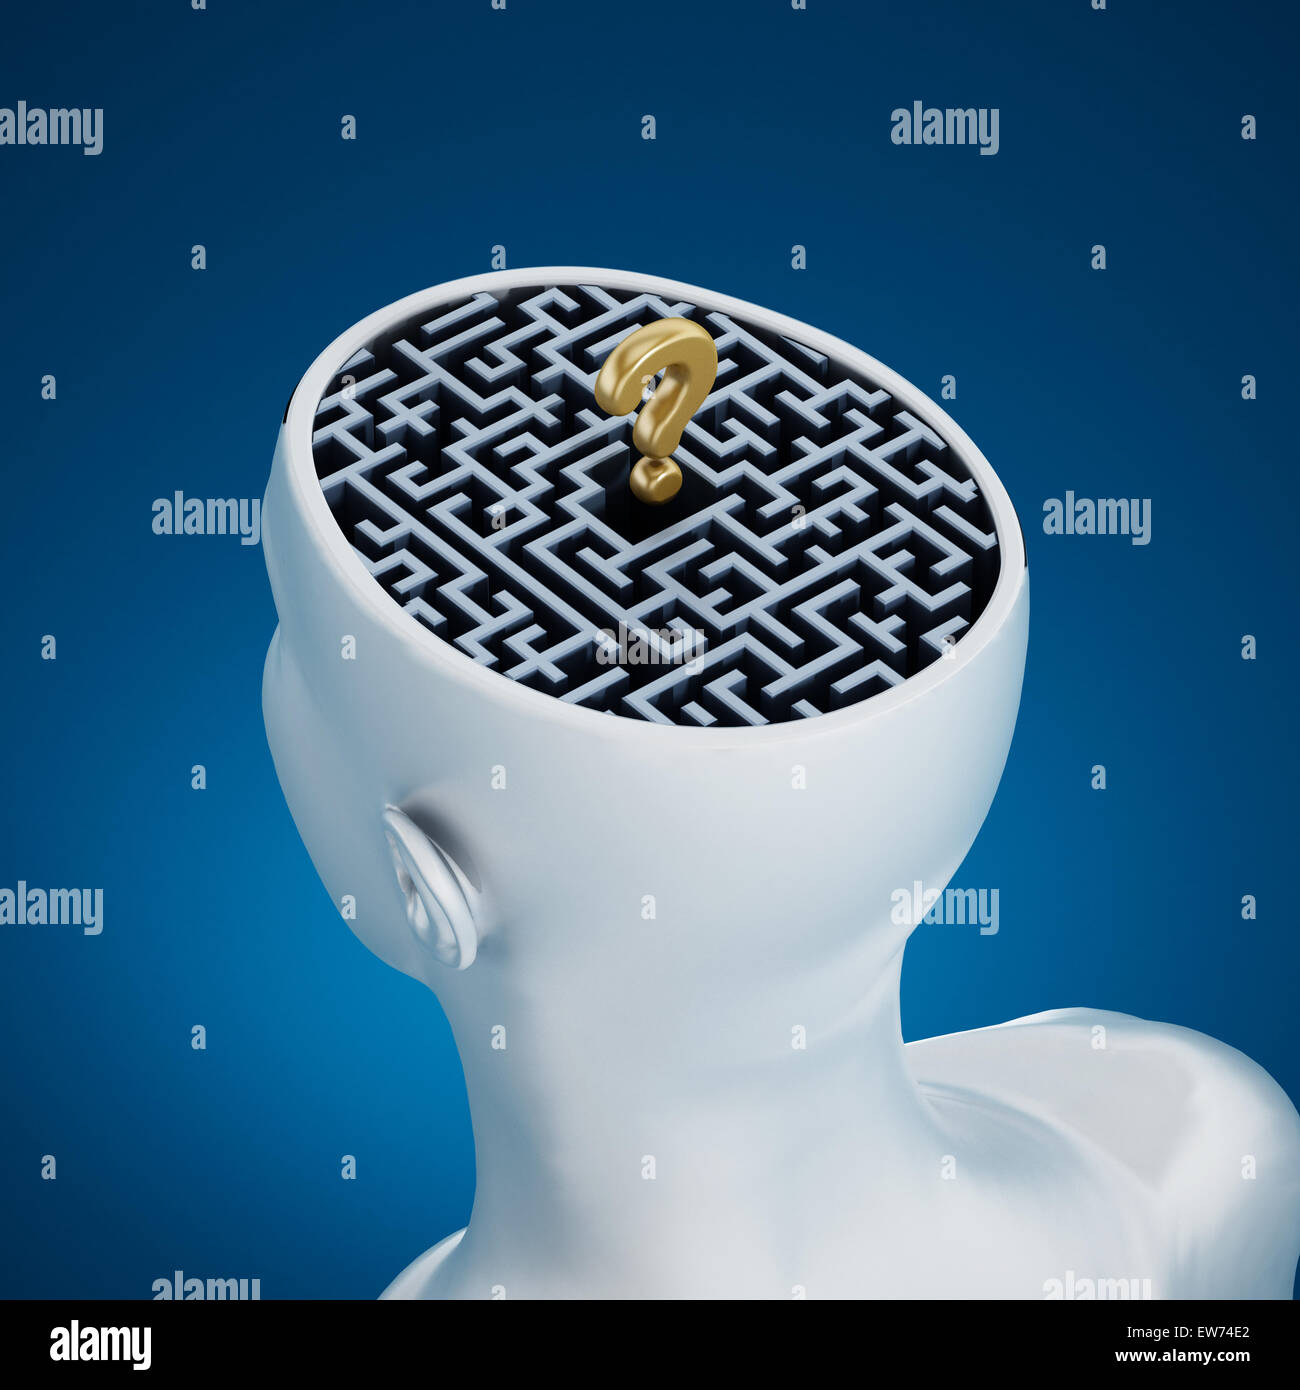 Il labirinto e un golden punto interrogativo all'interno di testa umana contro sfondo blu Foto Stock